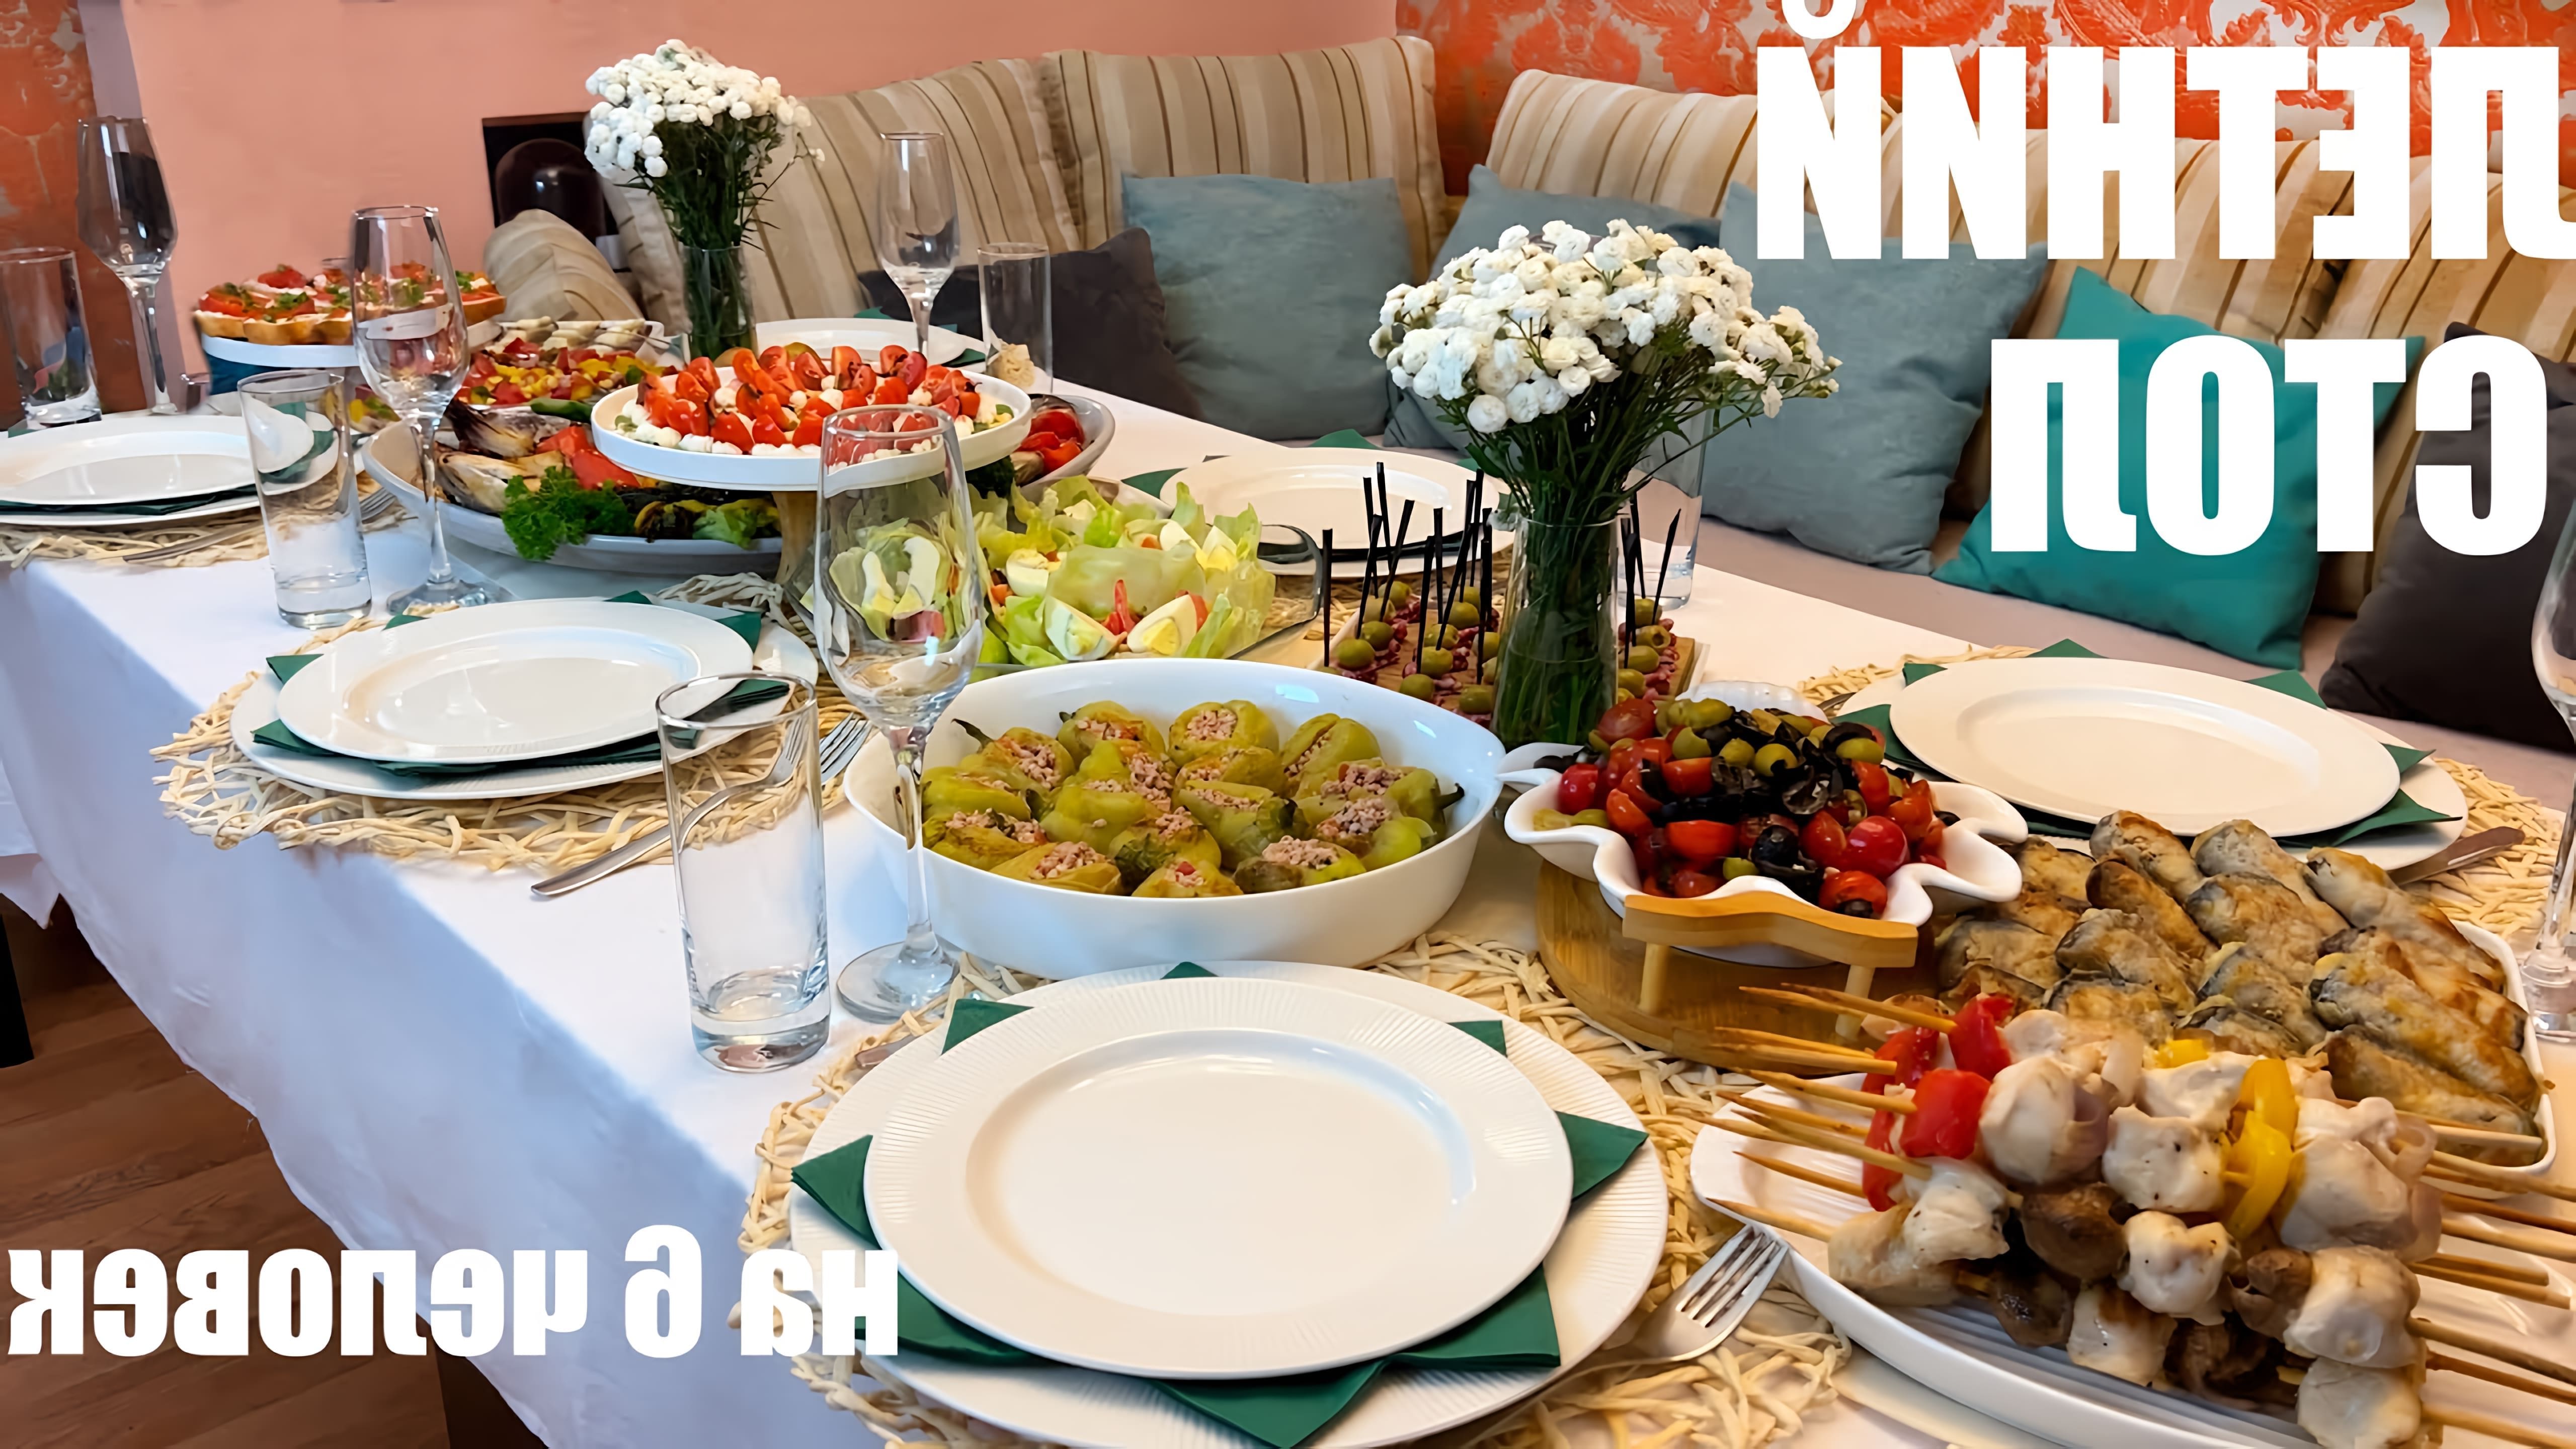 Видео показывает меню для летнего праздничного ужина на 6 взрослых